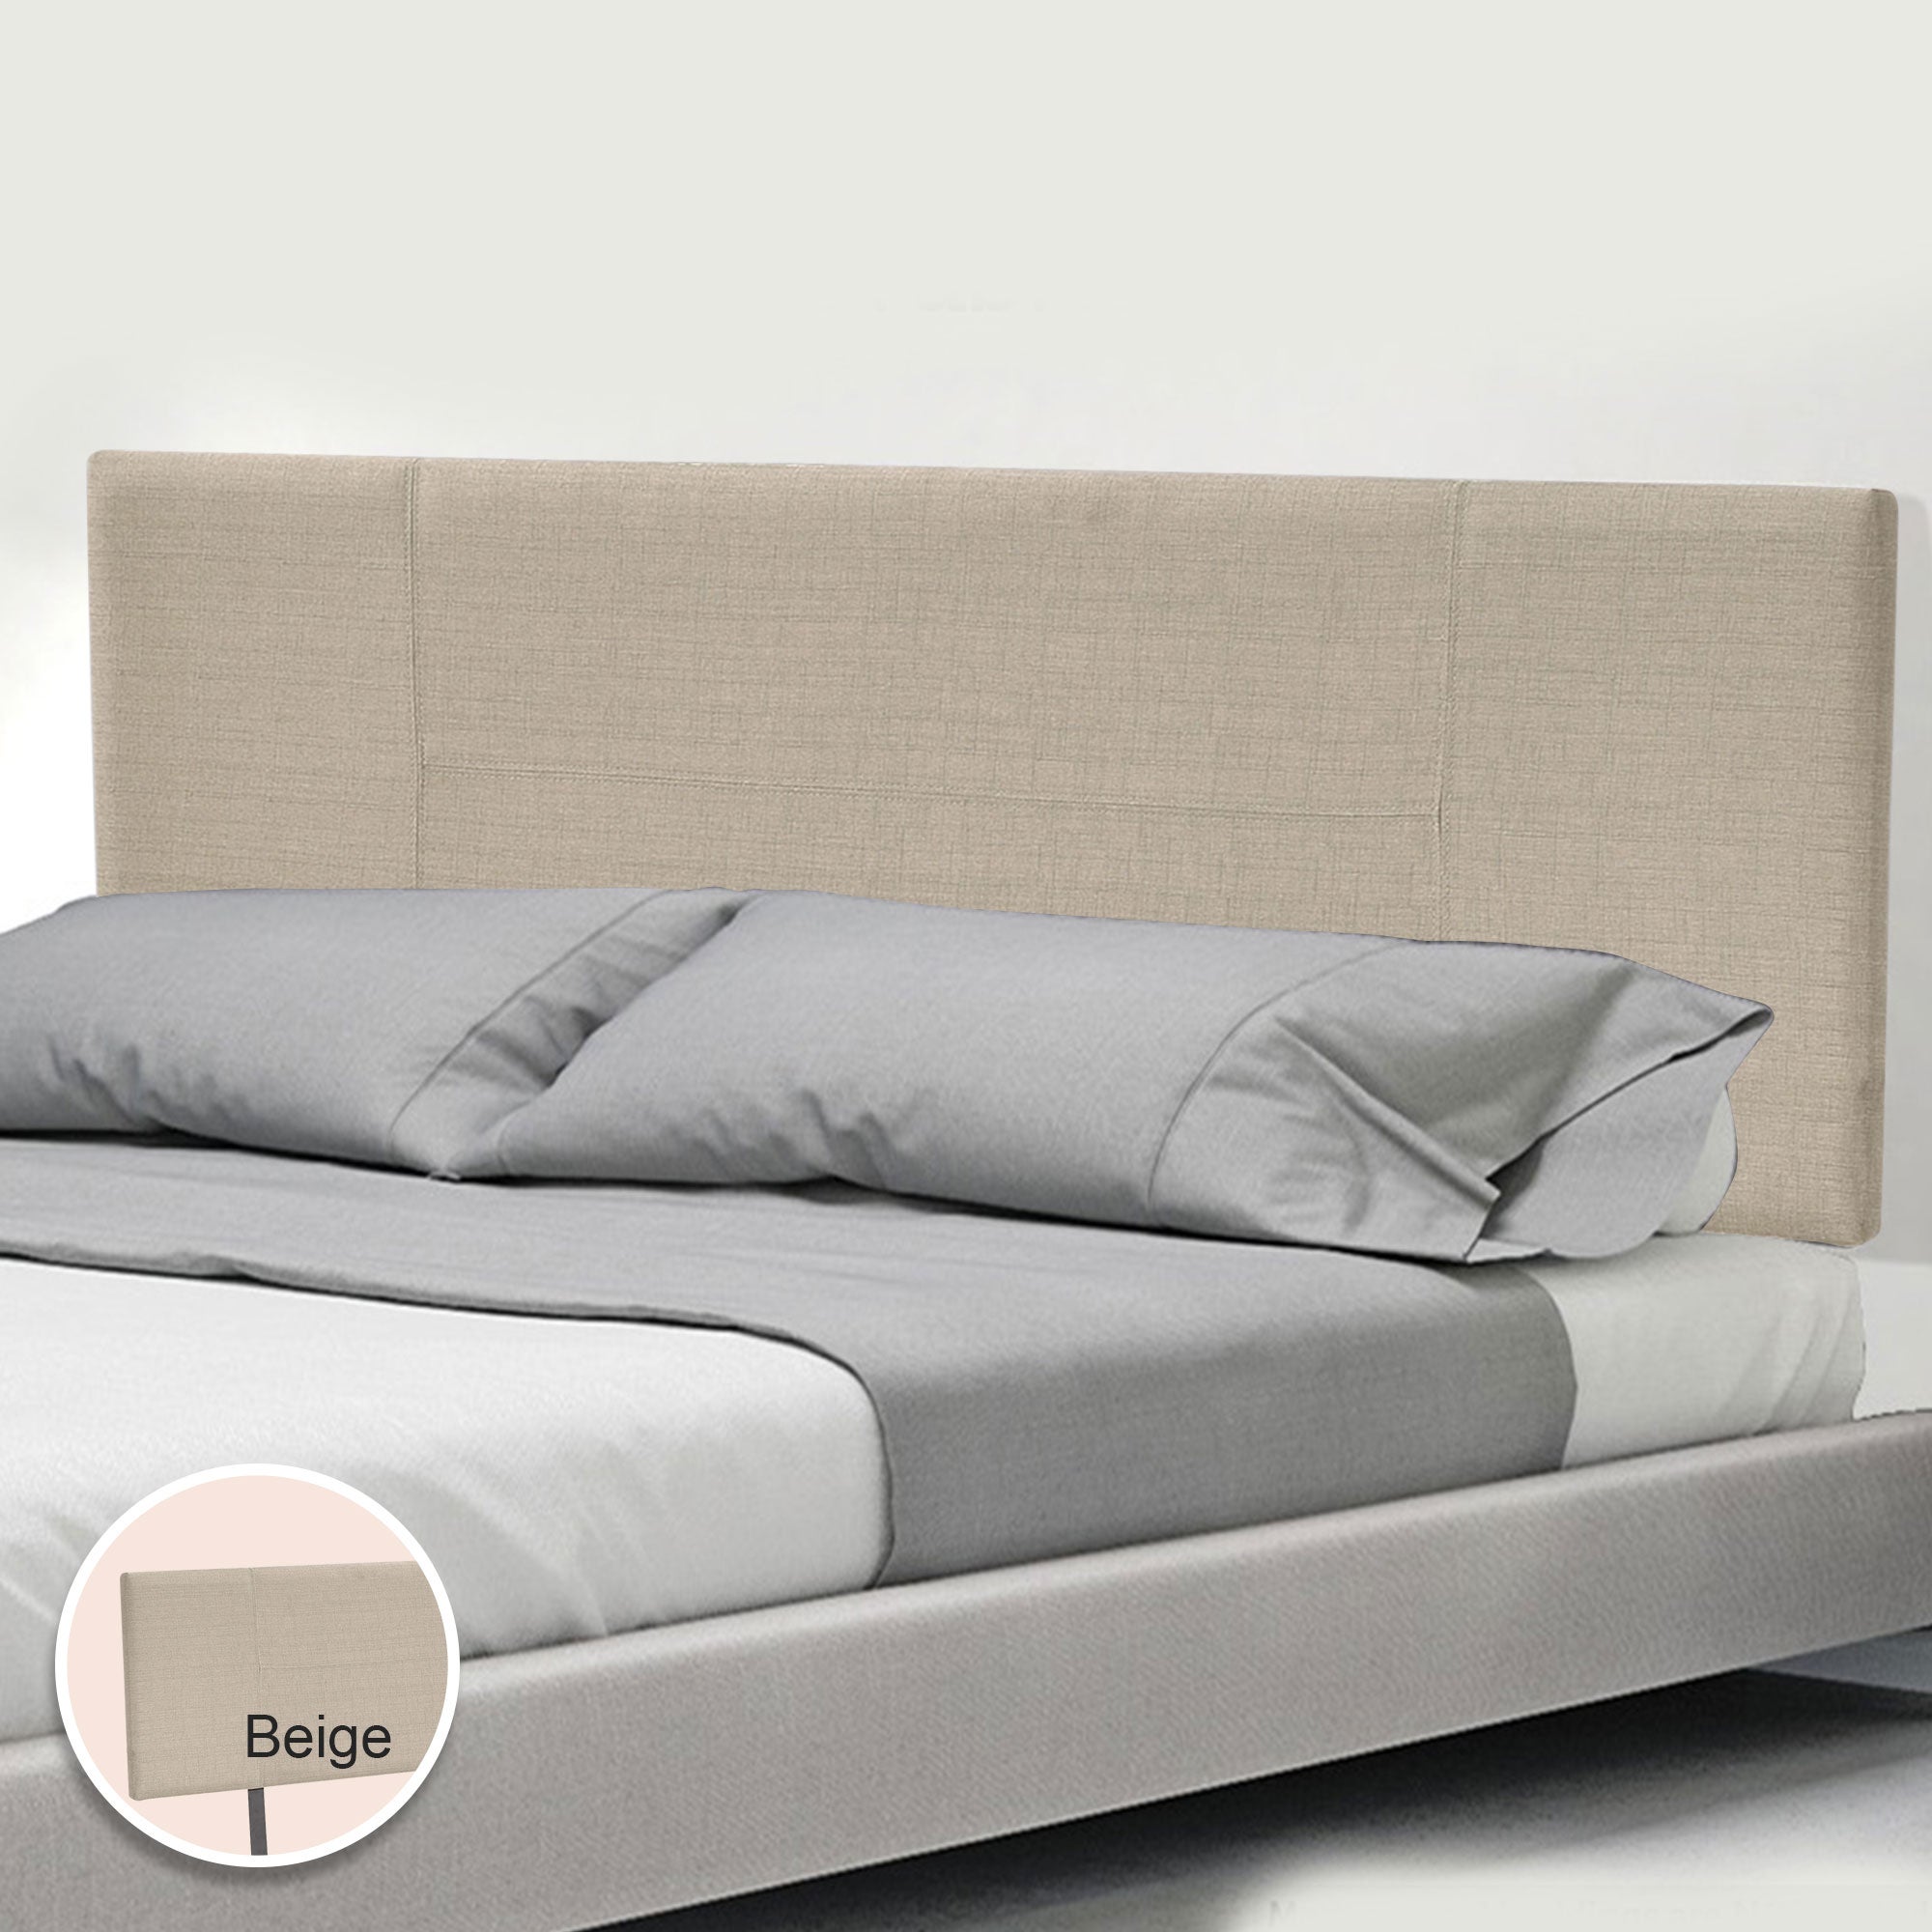 Linen Fabric King Bed Headboard Bedhead - Beige | Buy King Size